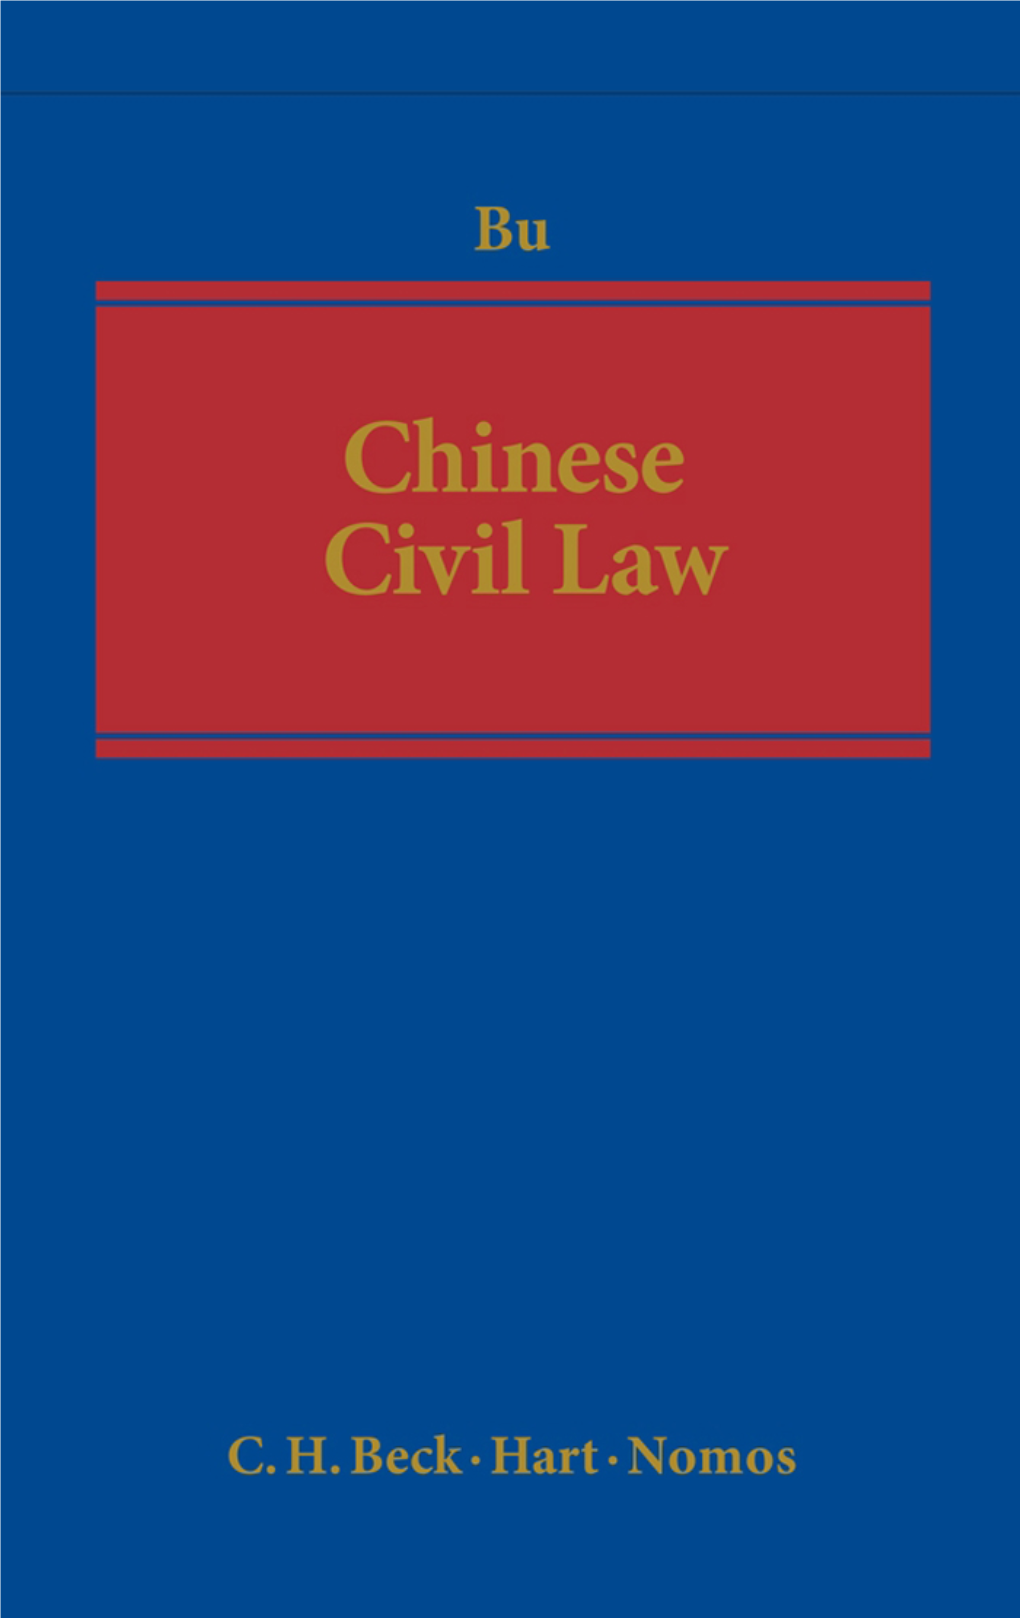 Chinese Civil